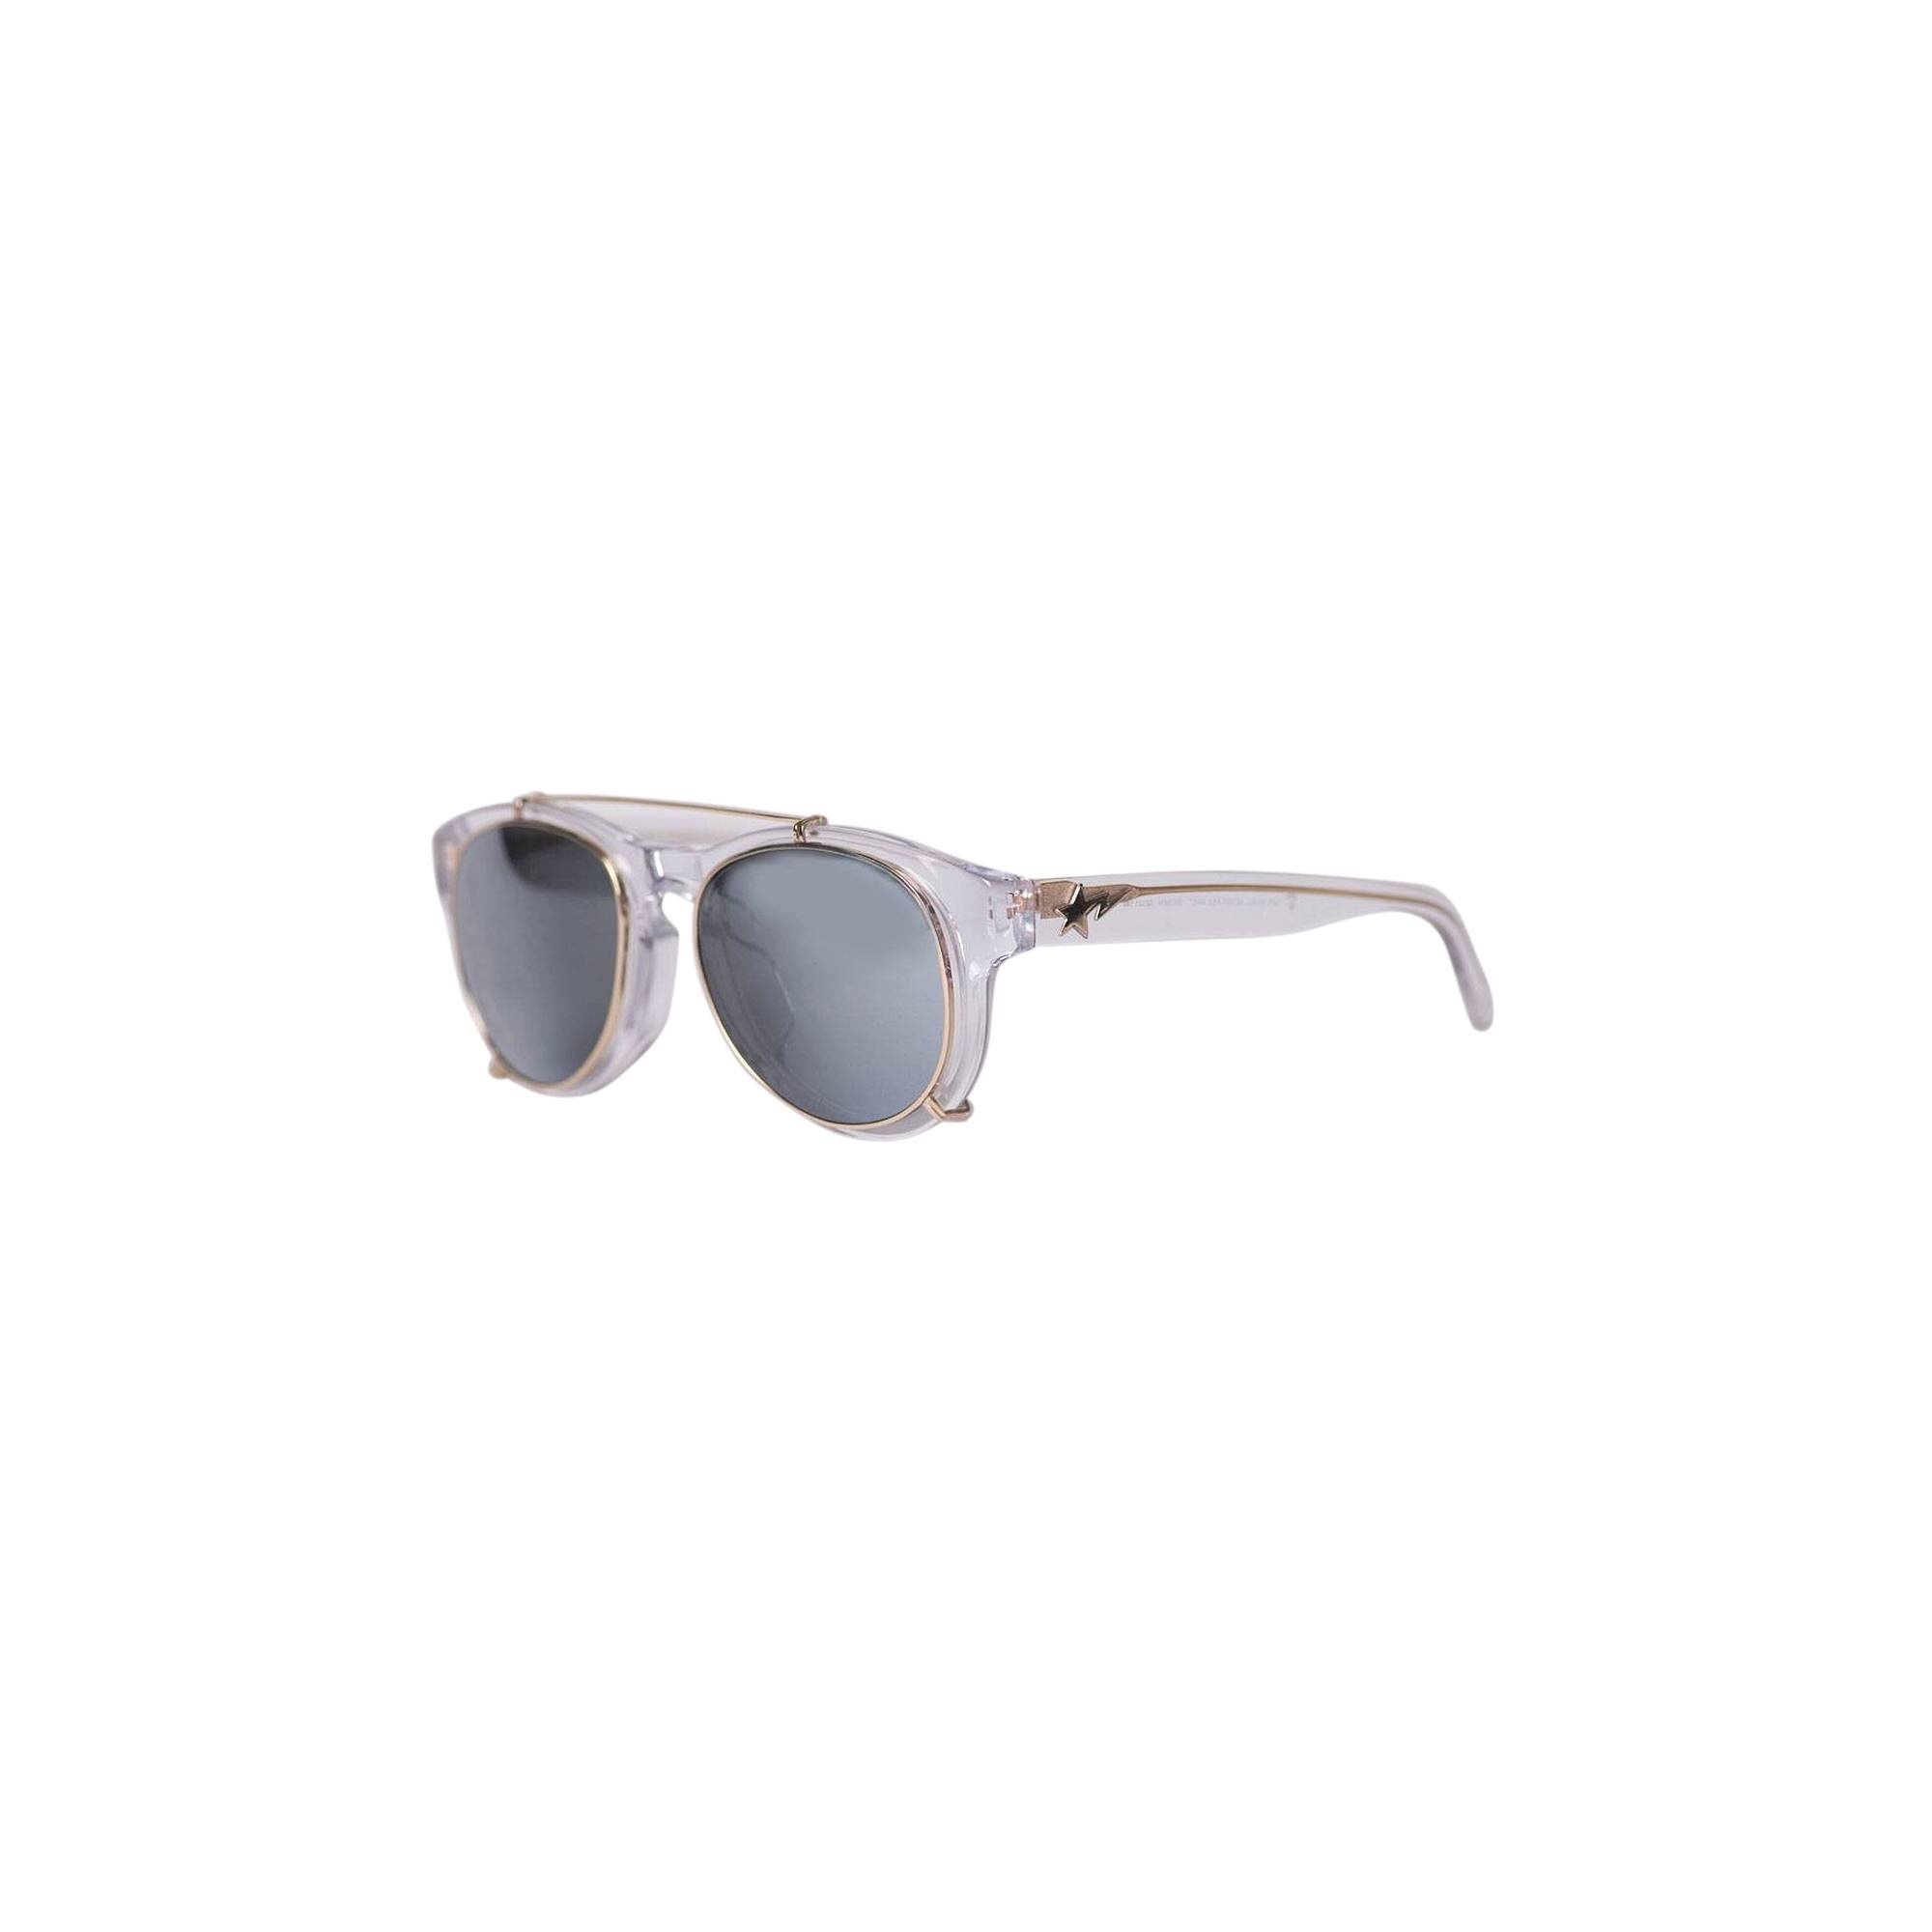 BAPE Sunglasses 'White' - 1